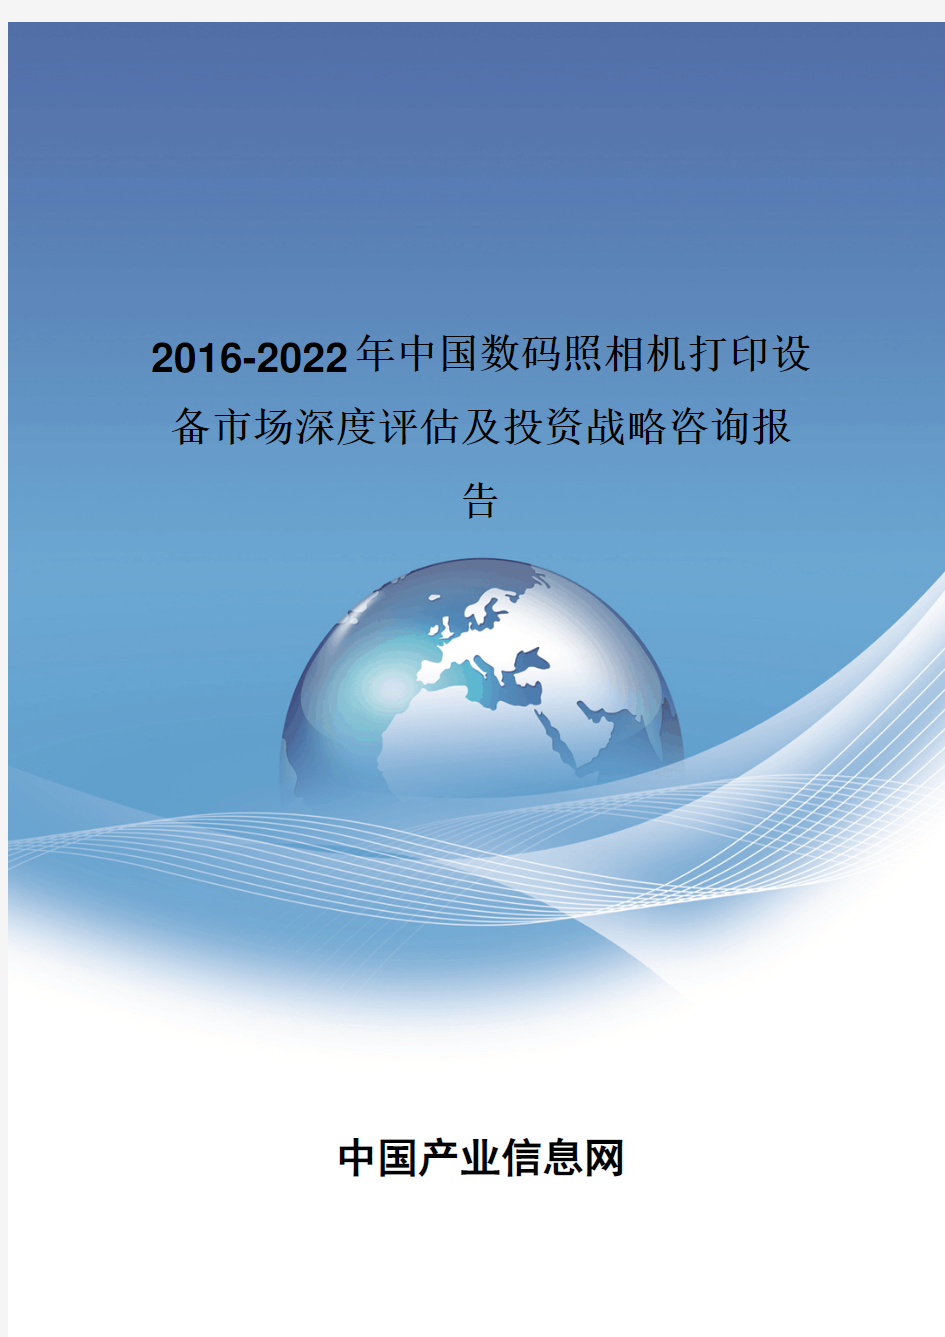 2016-2022年中国数码照相机打印设备市场深度评估报告